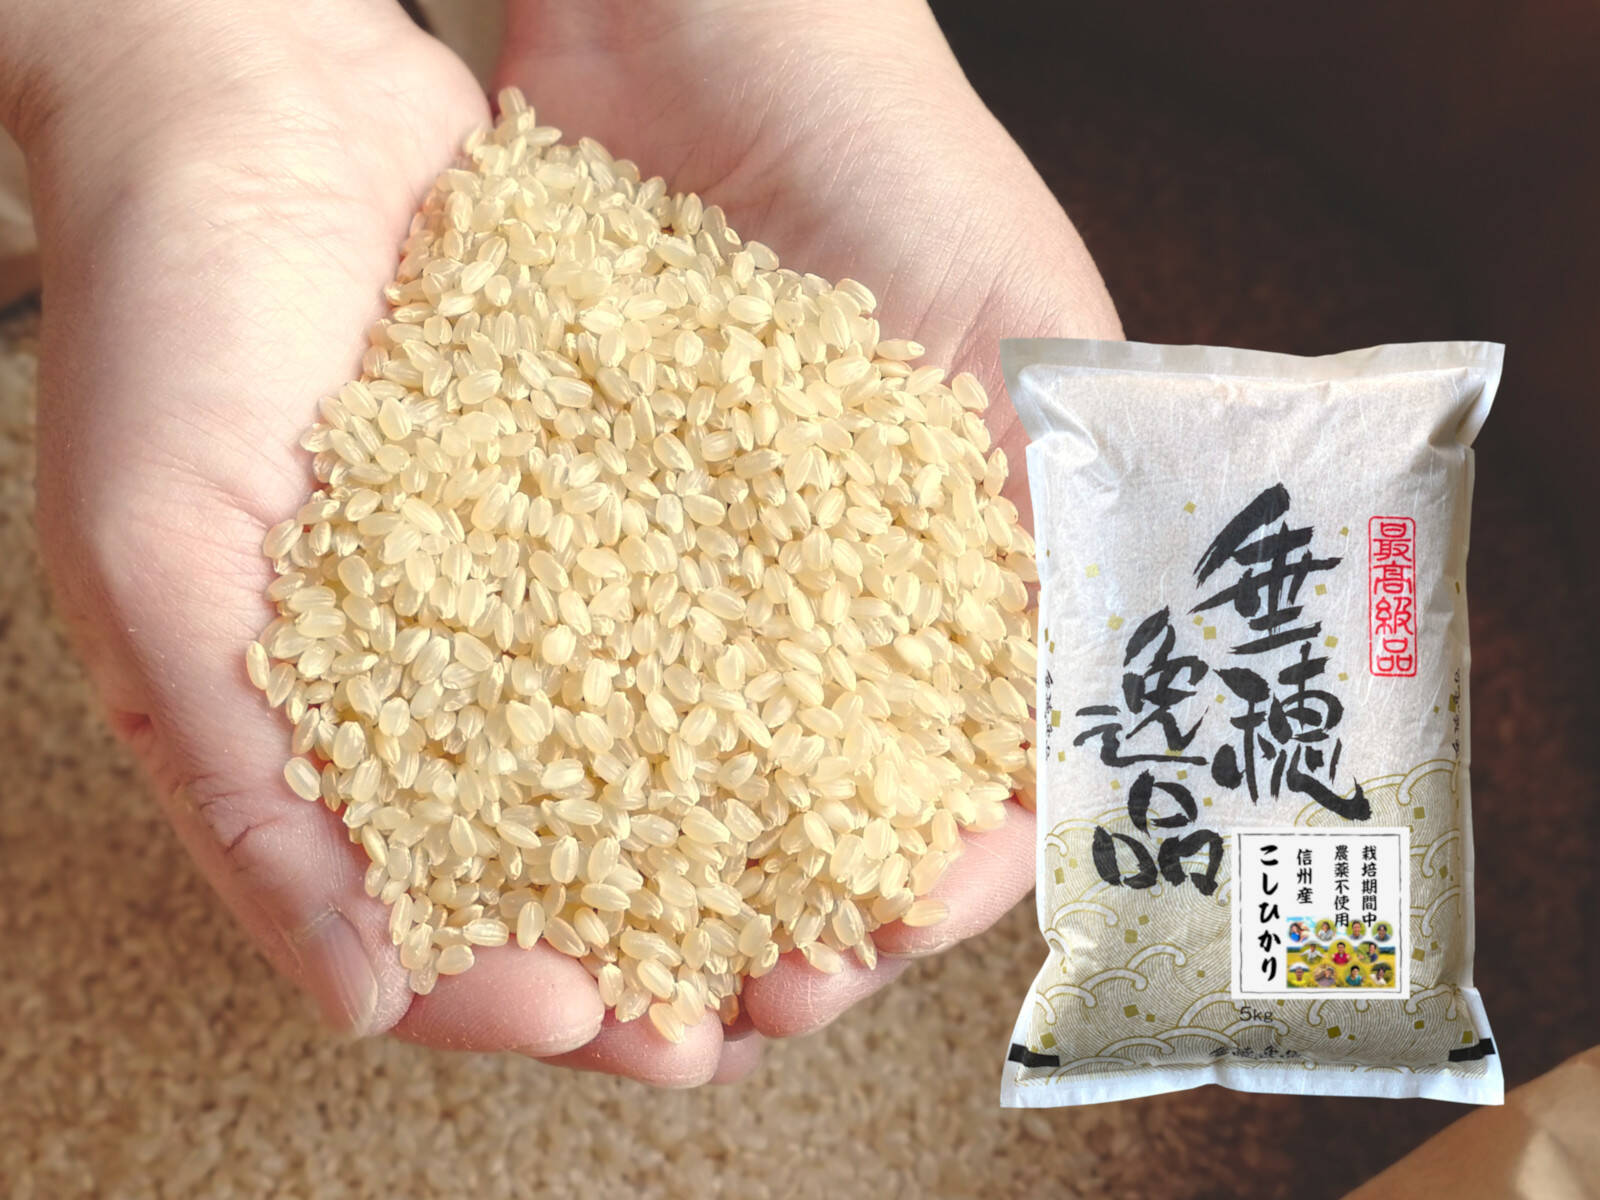 【玄米5kg】 農薬不使用米 信州産 こしひかり 令和3年産